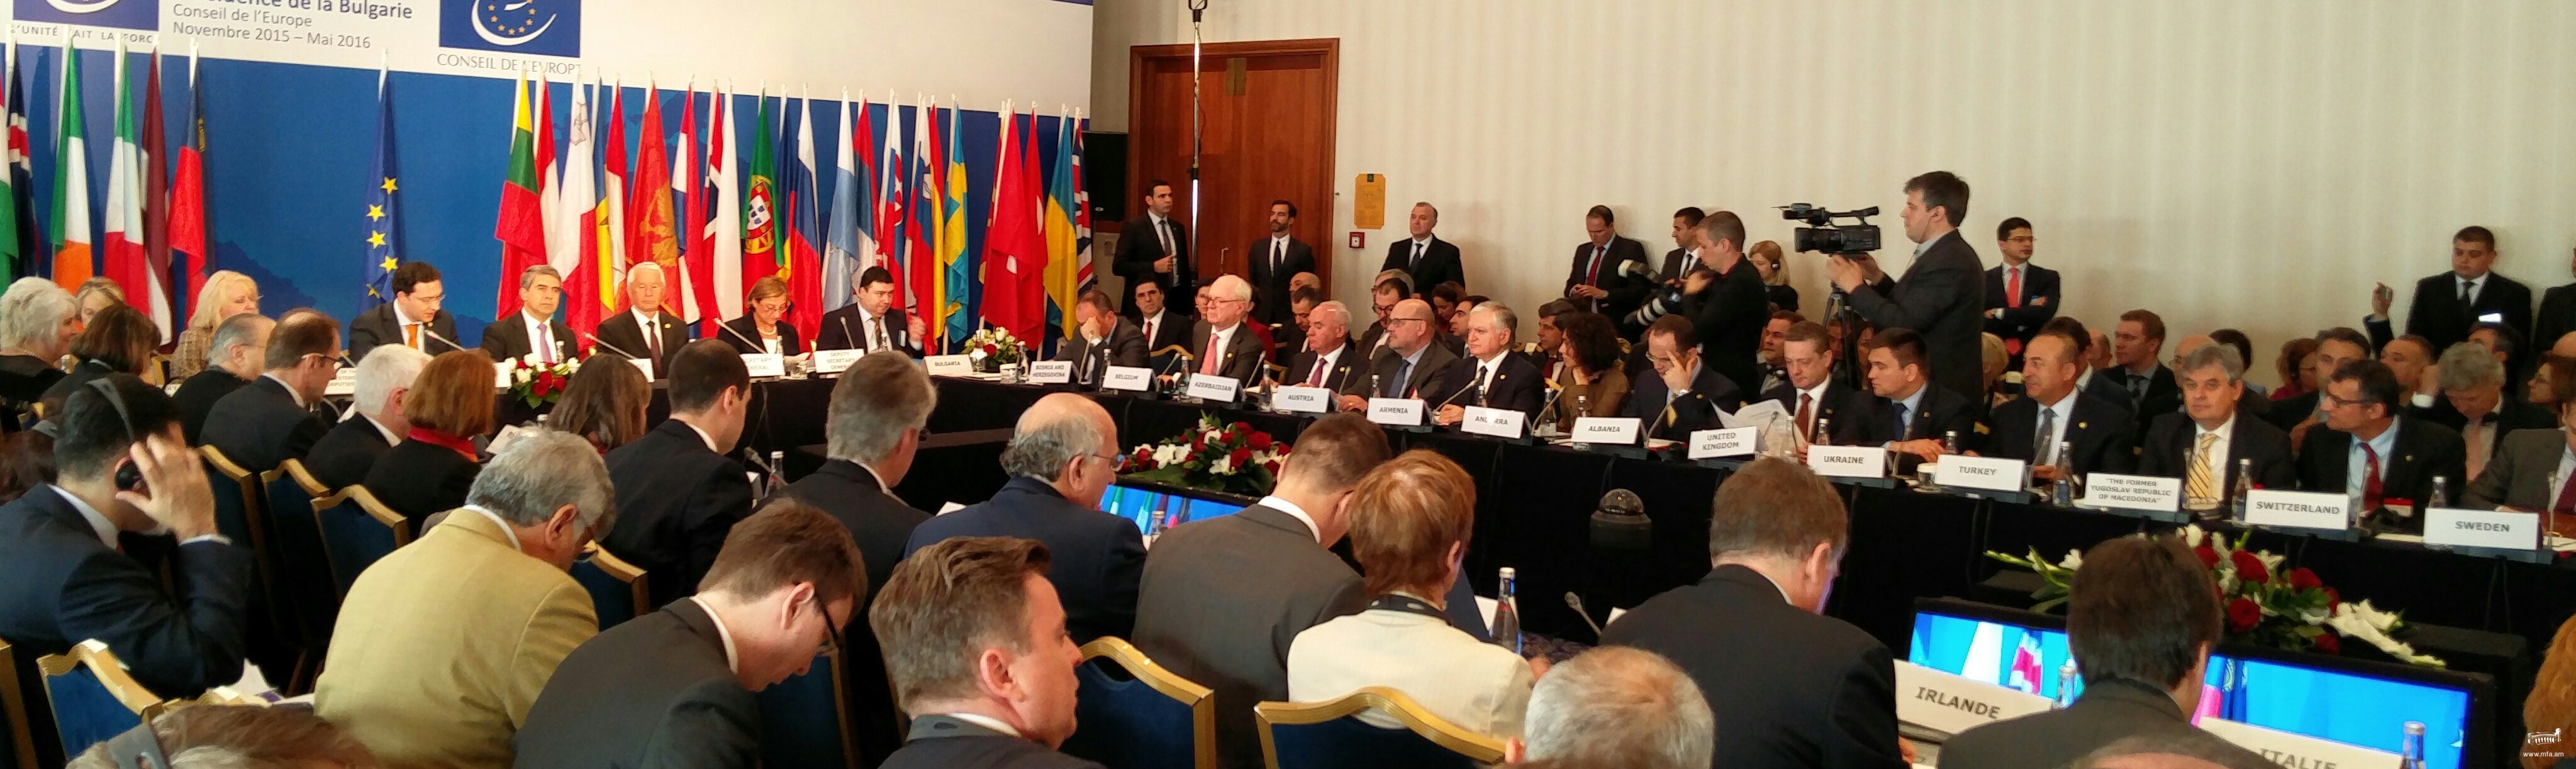 Հայաստանի արտգործնախարարը մասնակցեց Եվրոպայի խորհրդի նախարարների կոմիտեի նիստին